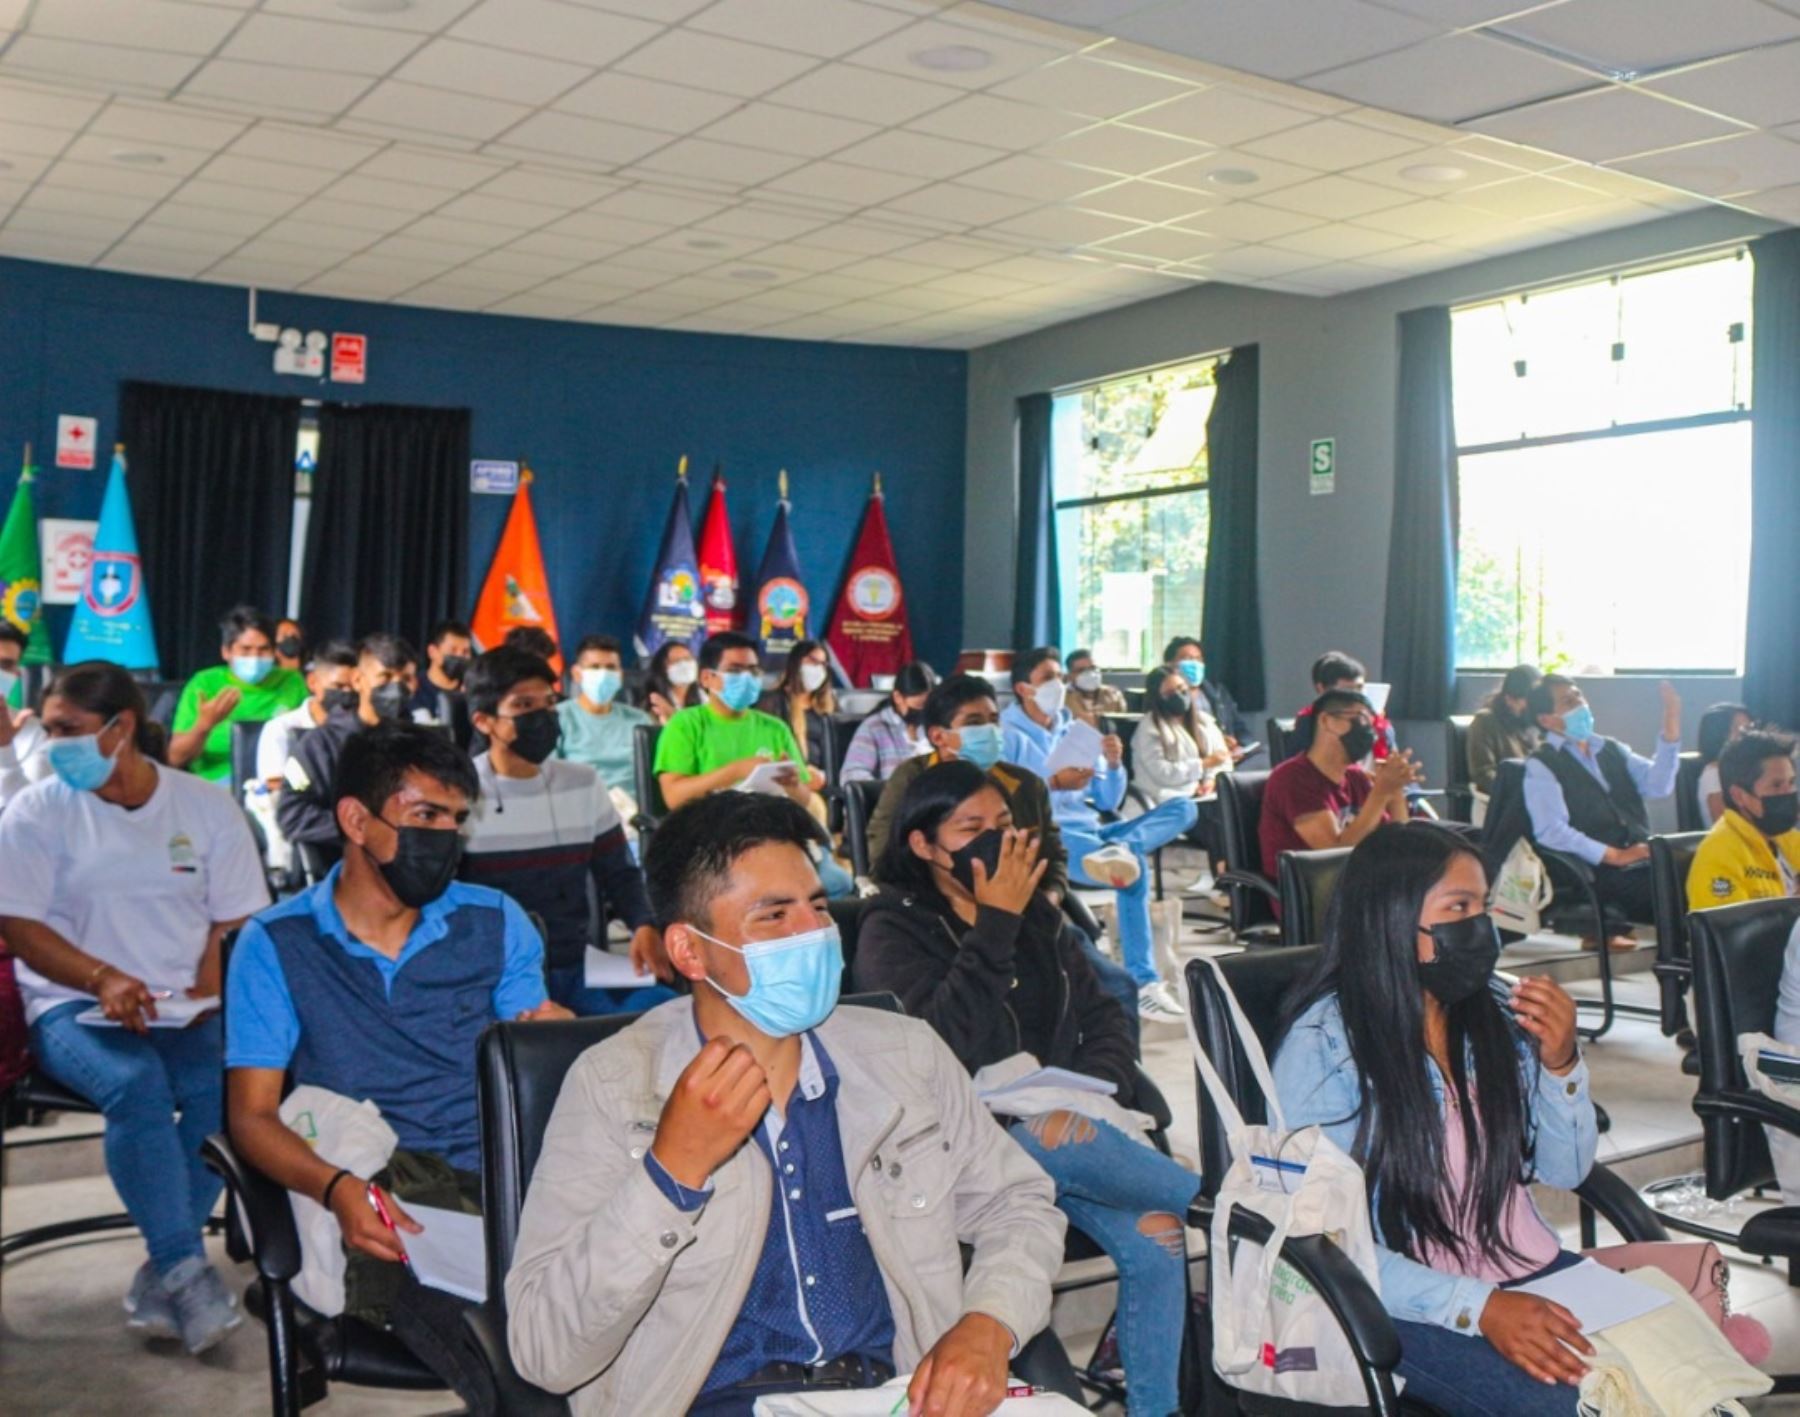 El Ministerio de Energía y Minas resaltó el éxito del taller de integración minera dirigido a estudiantes de la región Apurímac. Foto: ANDINA/difusión.